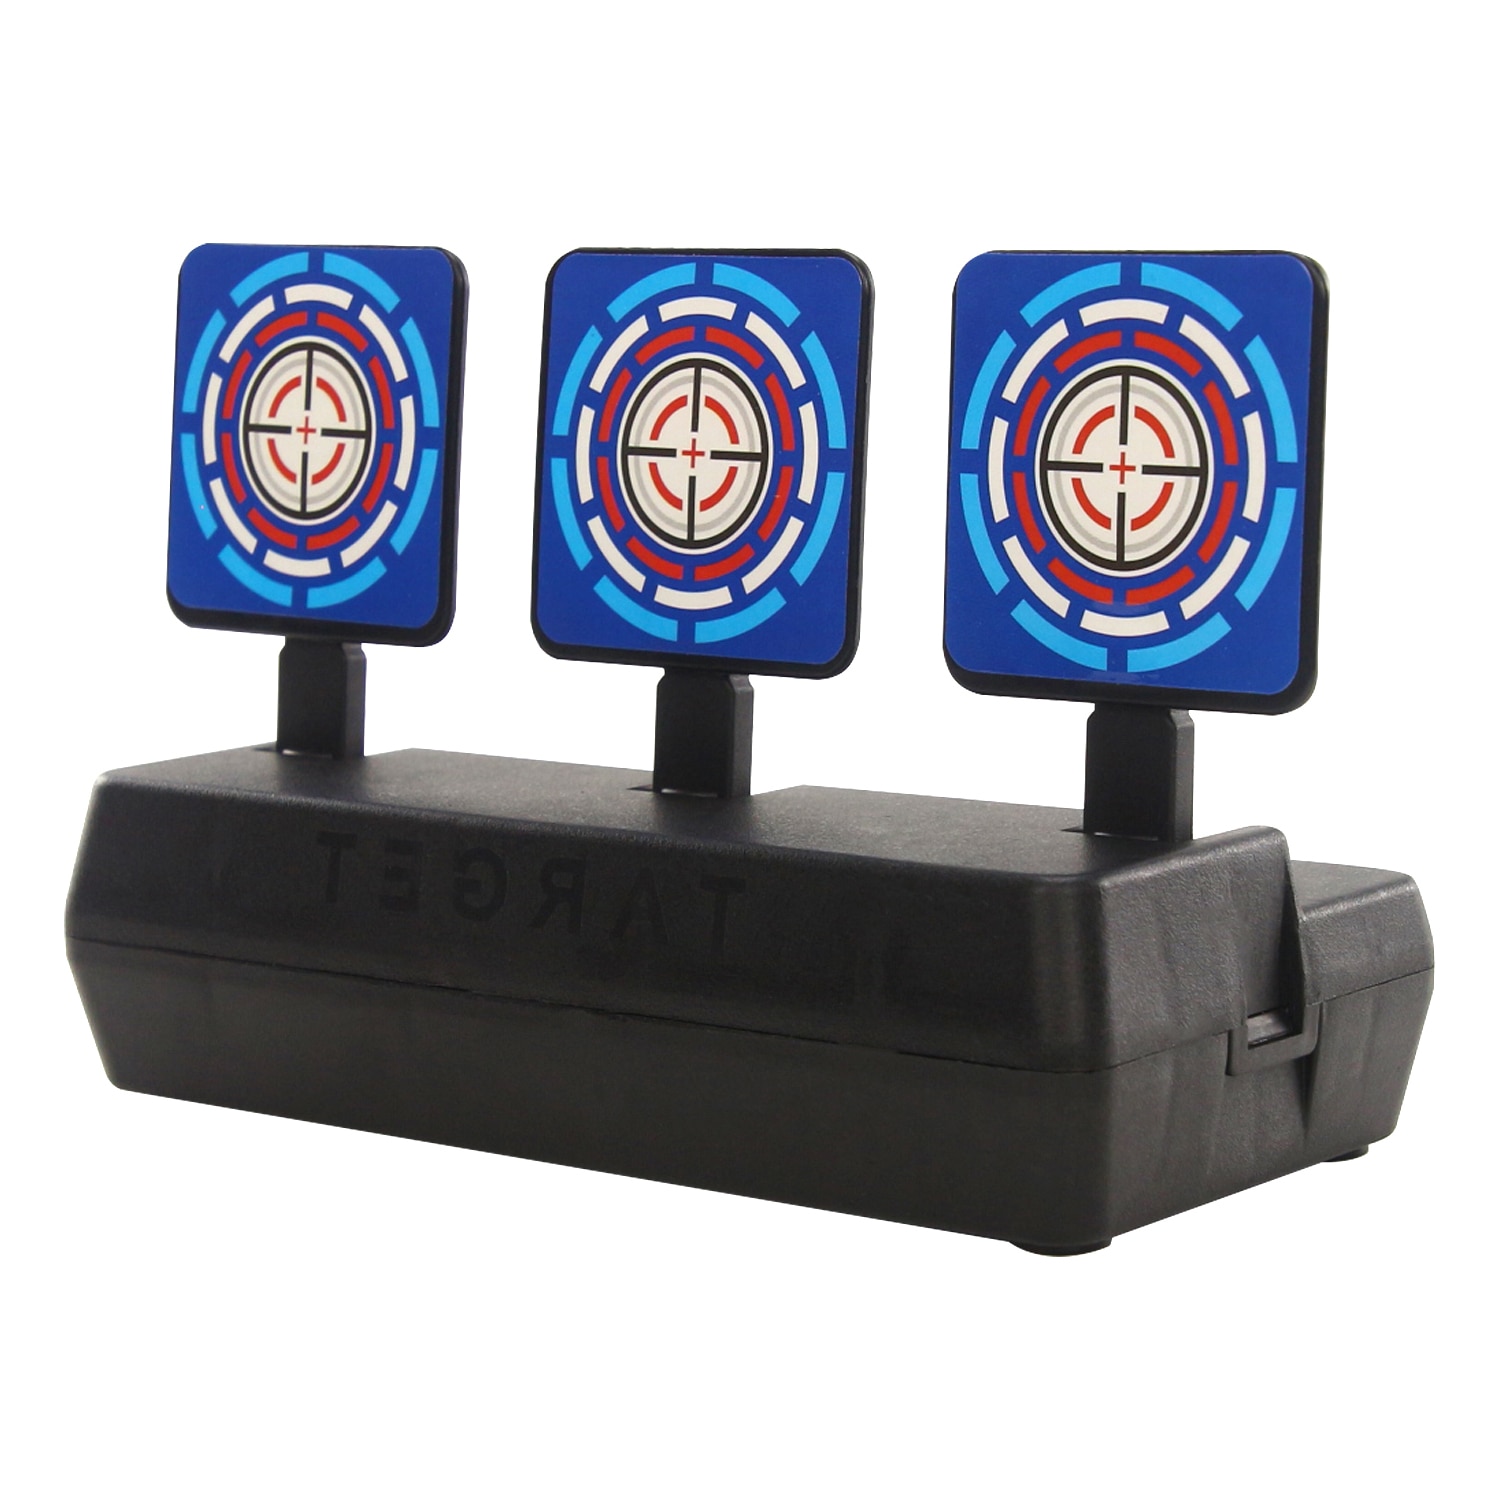 EKIND-objetivo de disparo con puntuación, reinicio automático de objetivos digitales, Compatible con pistolas Nerf, juguete de regalo Ideal para niños